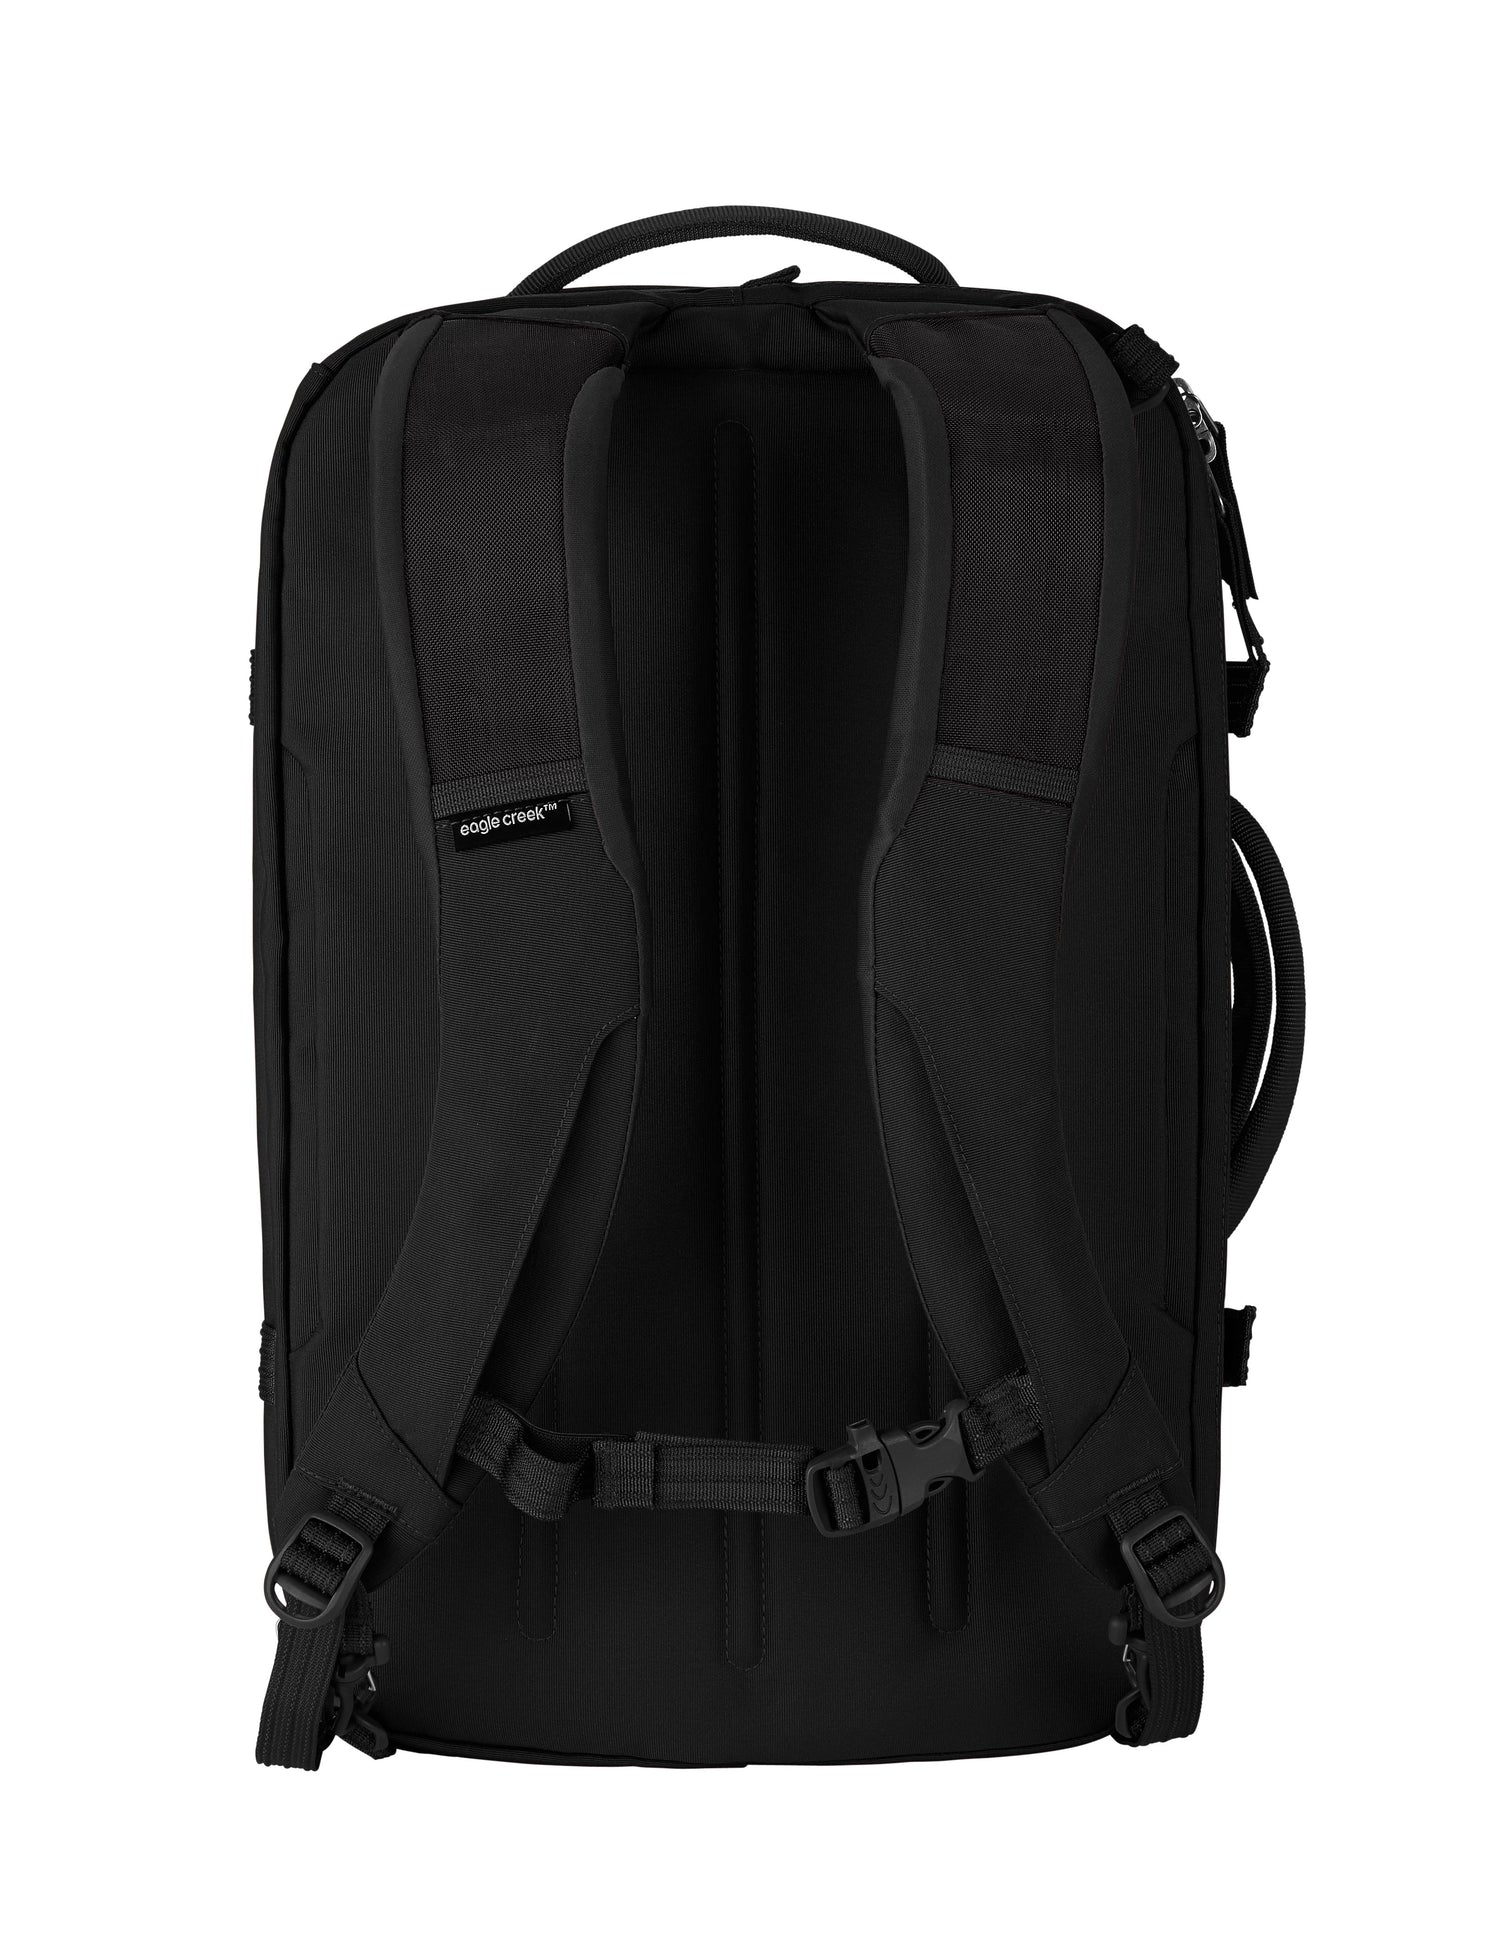 Explore Transit Bag 23L - BLACK